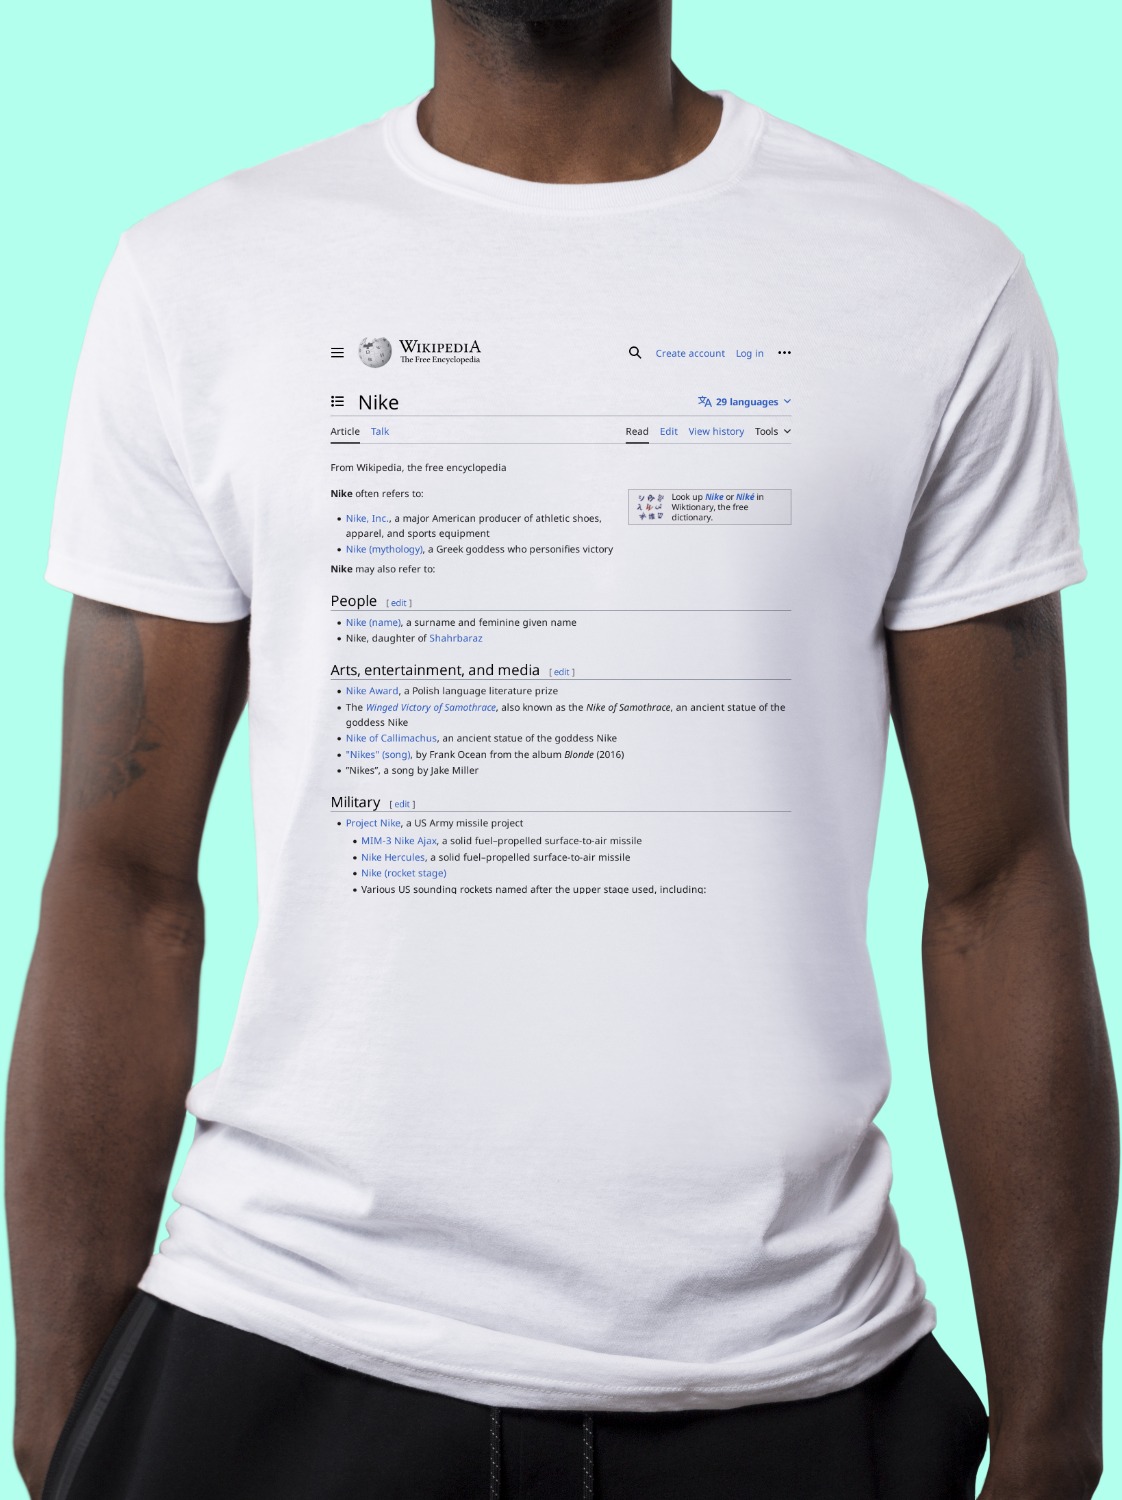 Nike Wikipedia T-Shirt